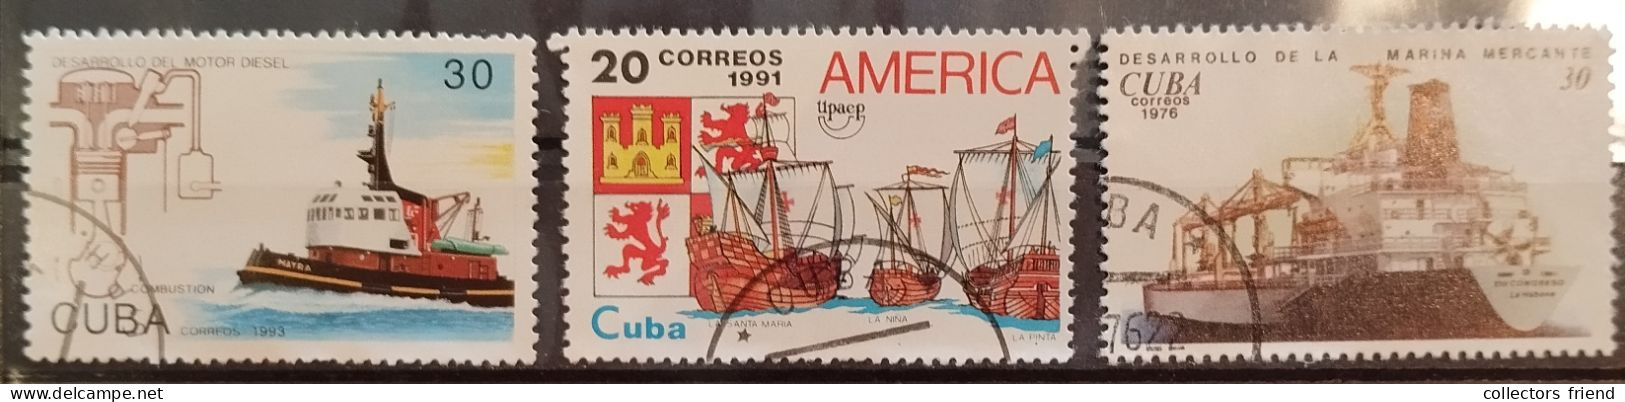 Cuba Kuba - 1993 - Schiffe, Ships - 3 Stamps - Used - Ships